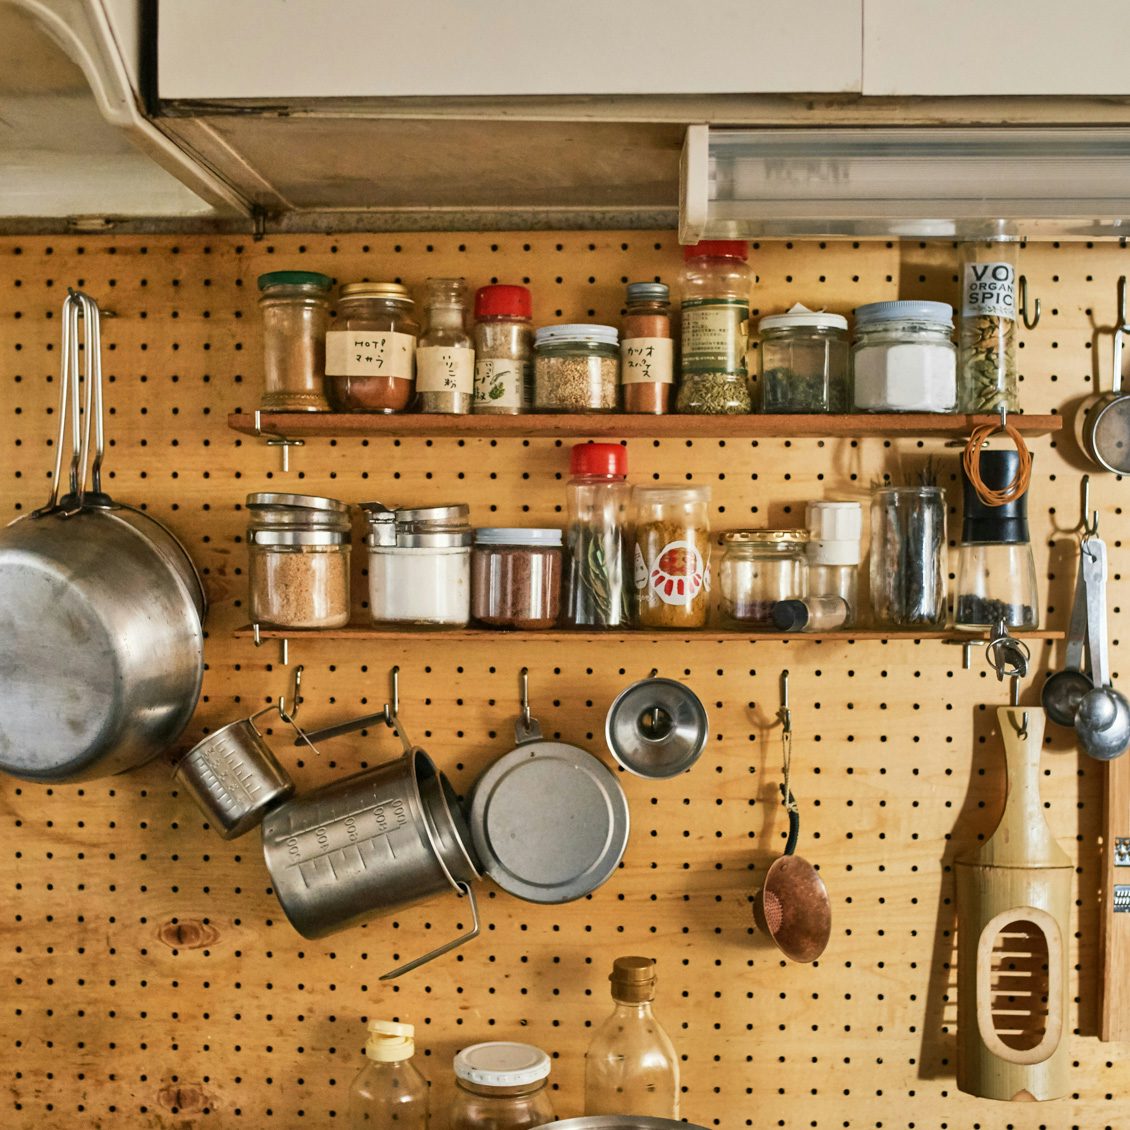 キッチンからはじまる暮らし 第1話 どのアイテムも見渡しやすい 料理家さんのキッチン 北欧 暮らしの道具店